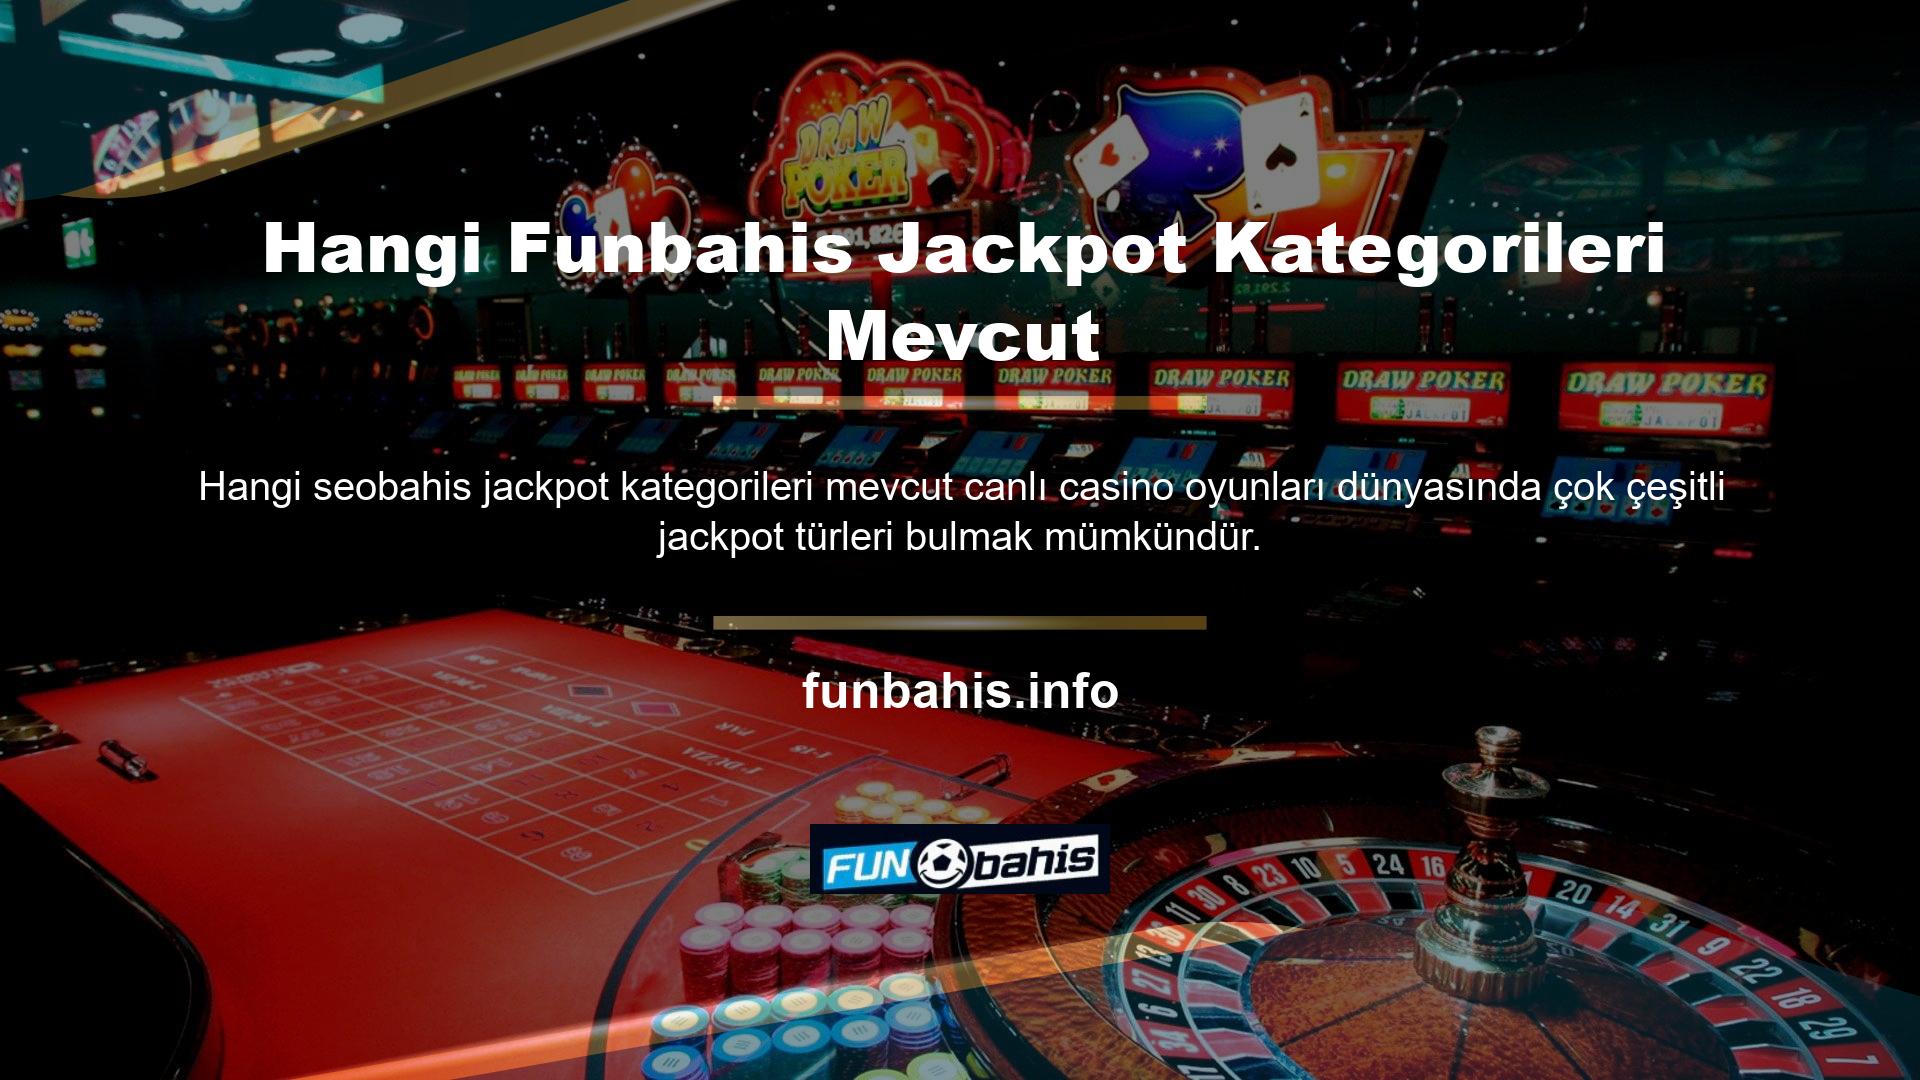 Bu nedenle oyun kategorilerinde Funbahis jackpotunun açıklamasına yer verilmiştir